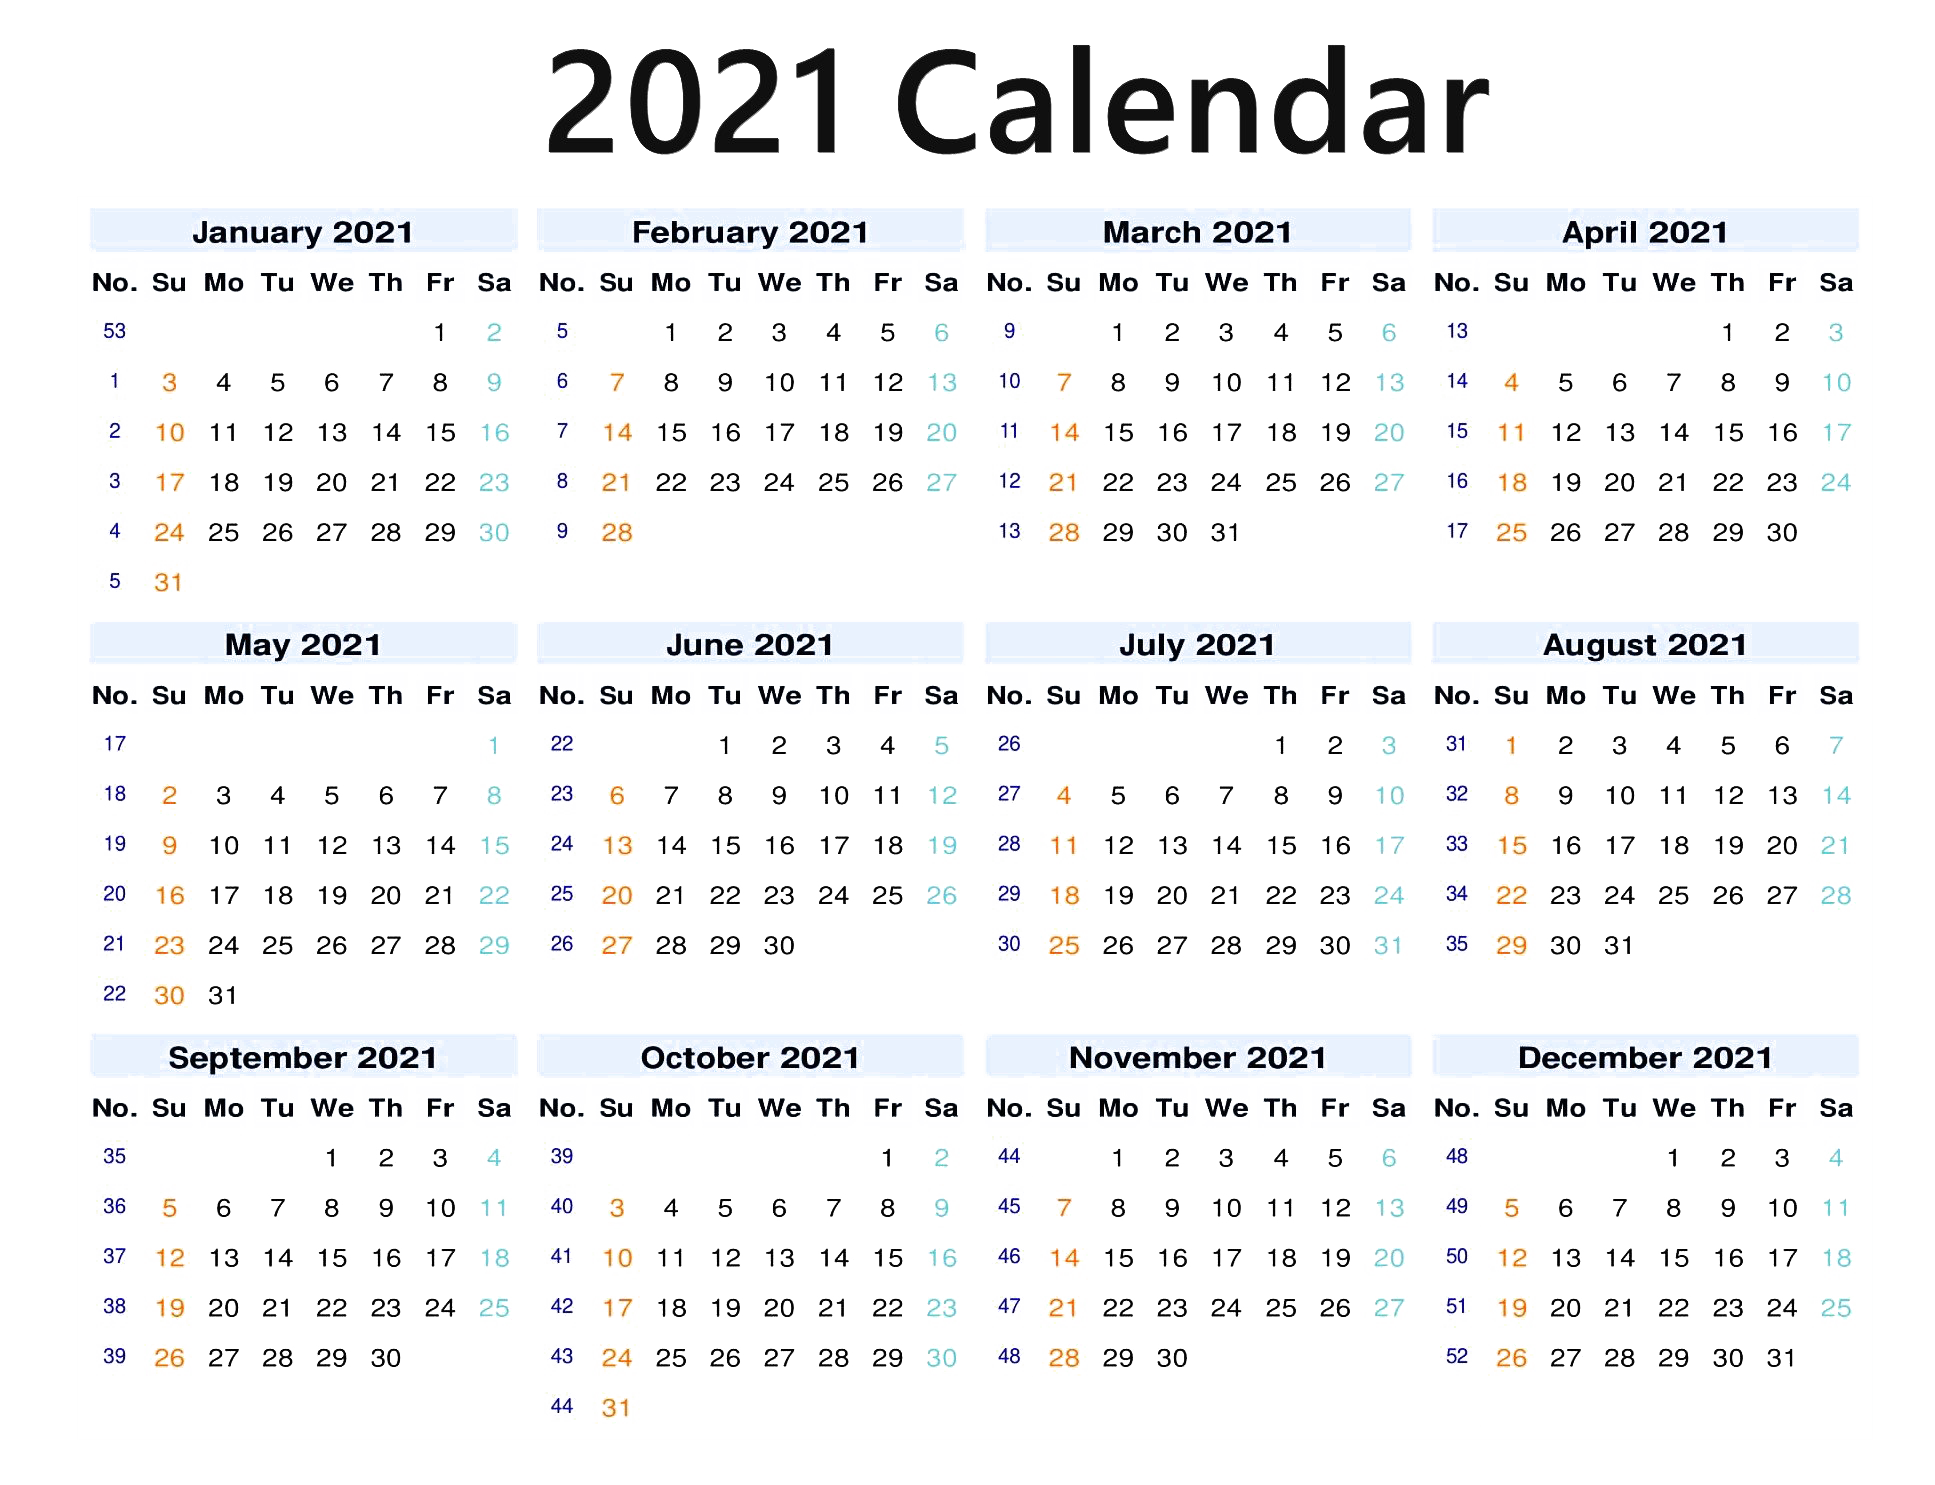 Calendar 2021 PNG Image Background